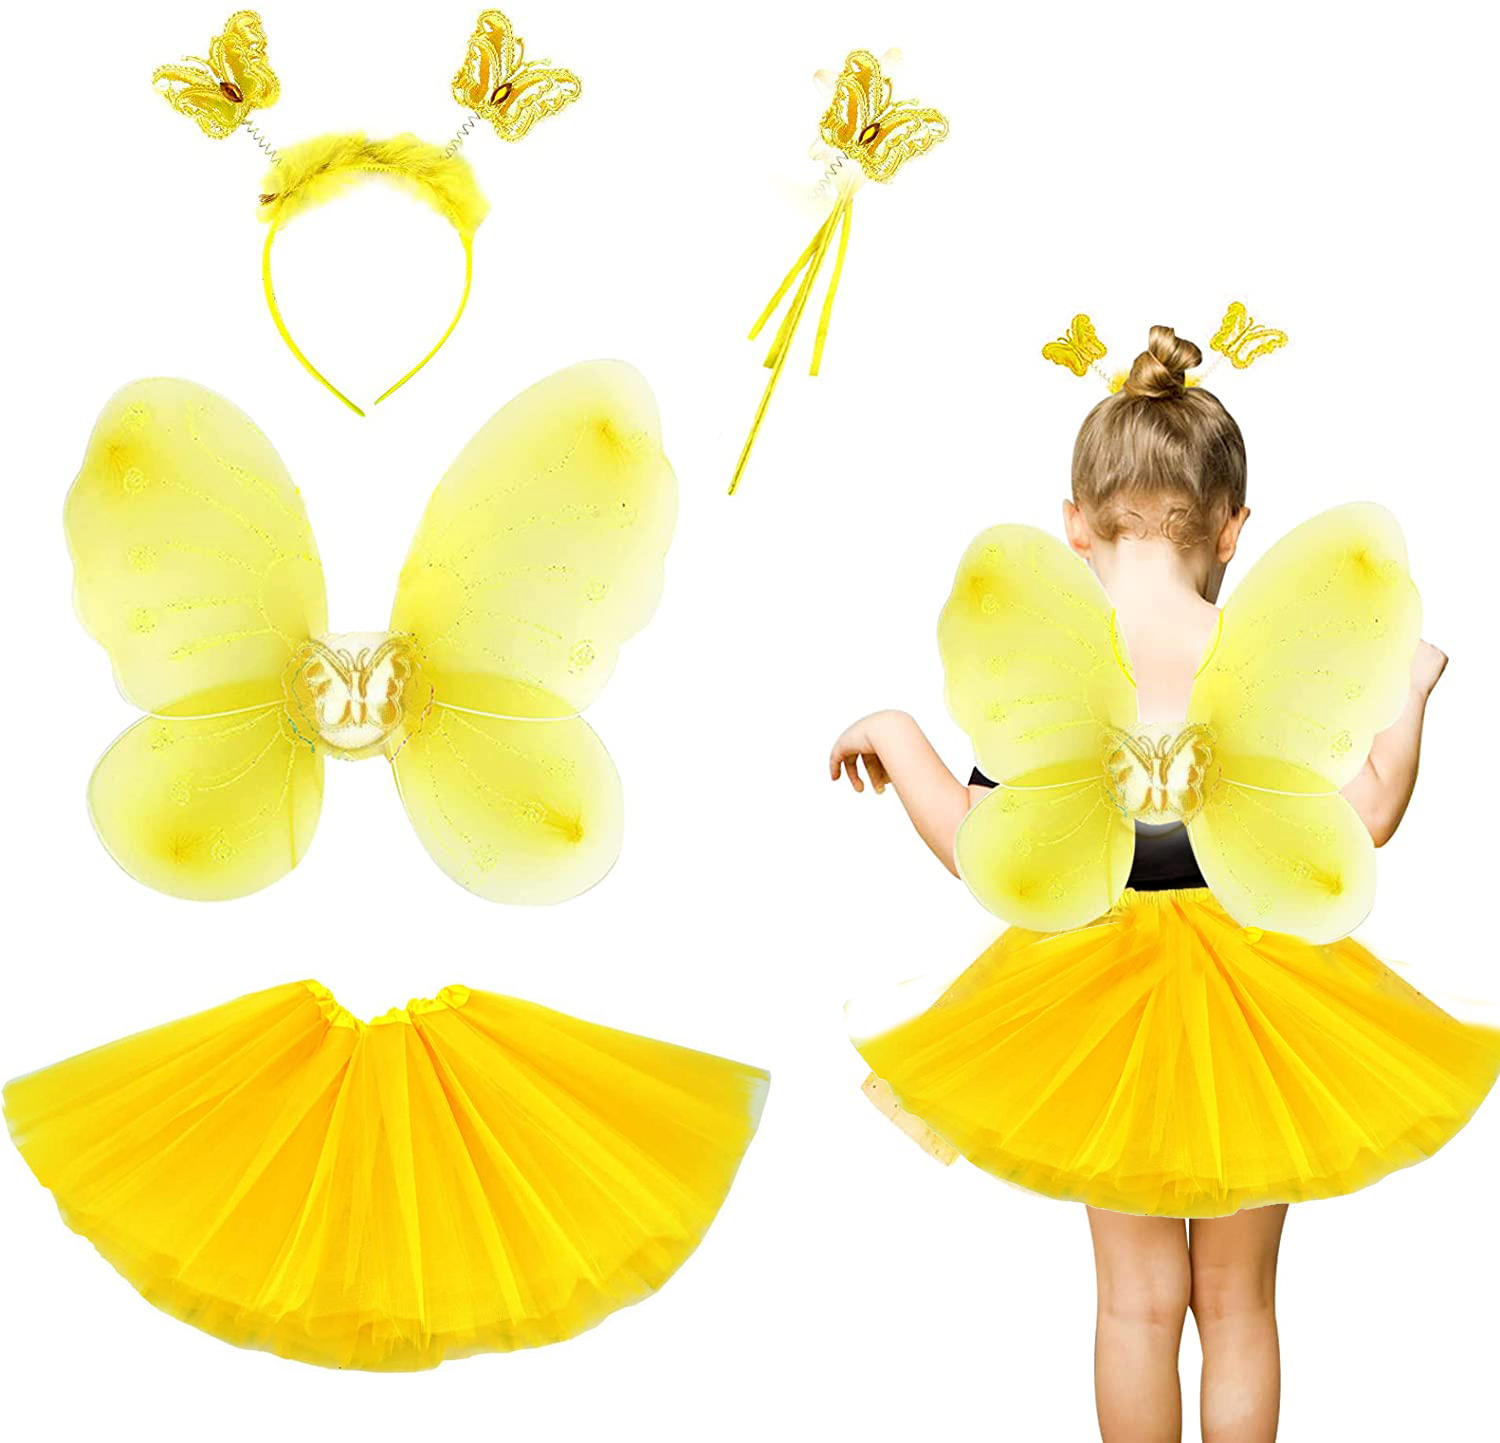 Sarı Kelebek Kostümü Çocuk - Sarı Kelebek Kostüm Aksesuar Seti 4 Parça (CLZ)